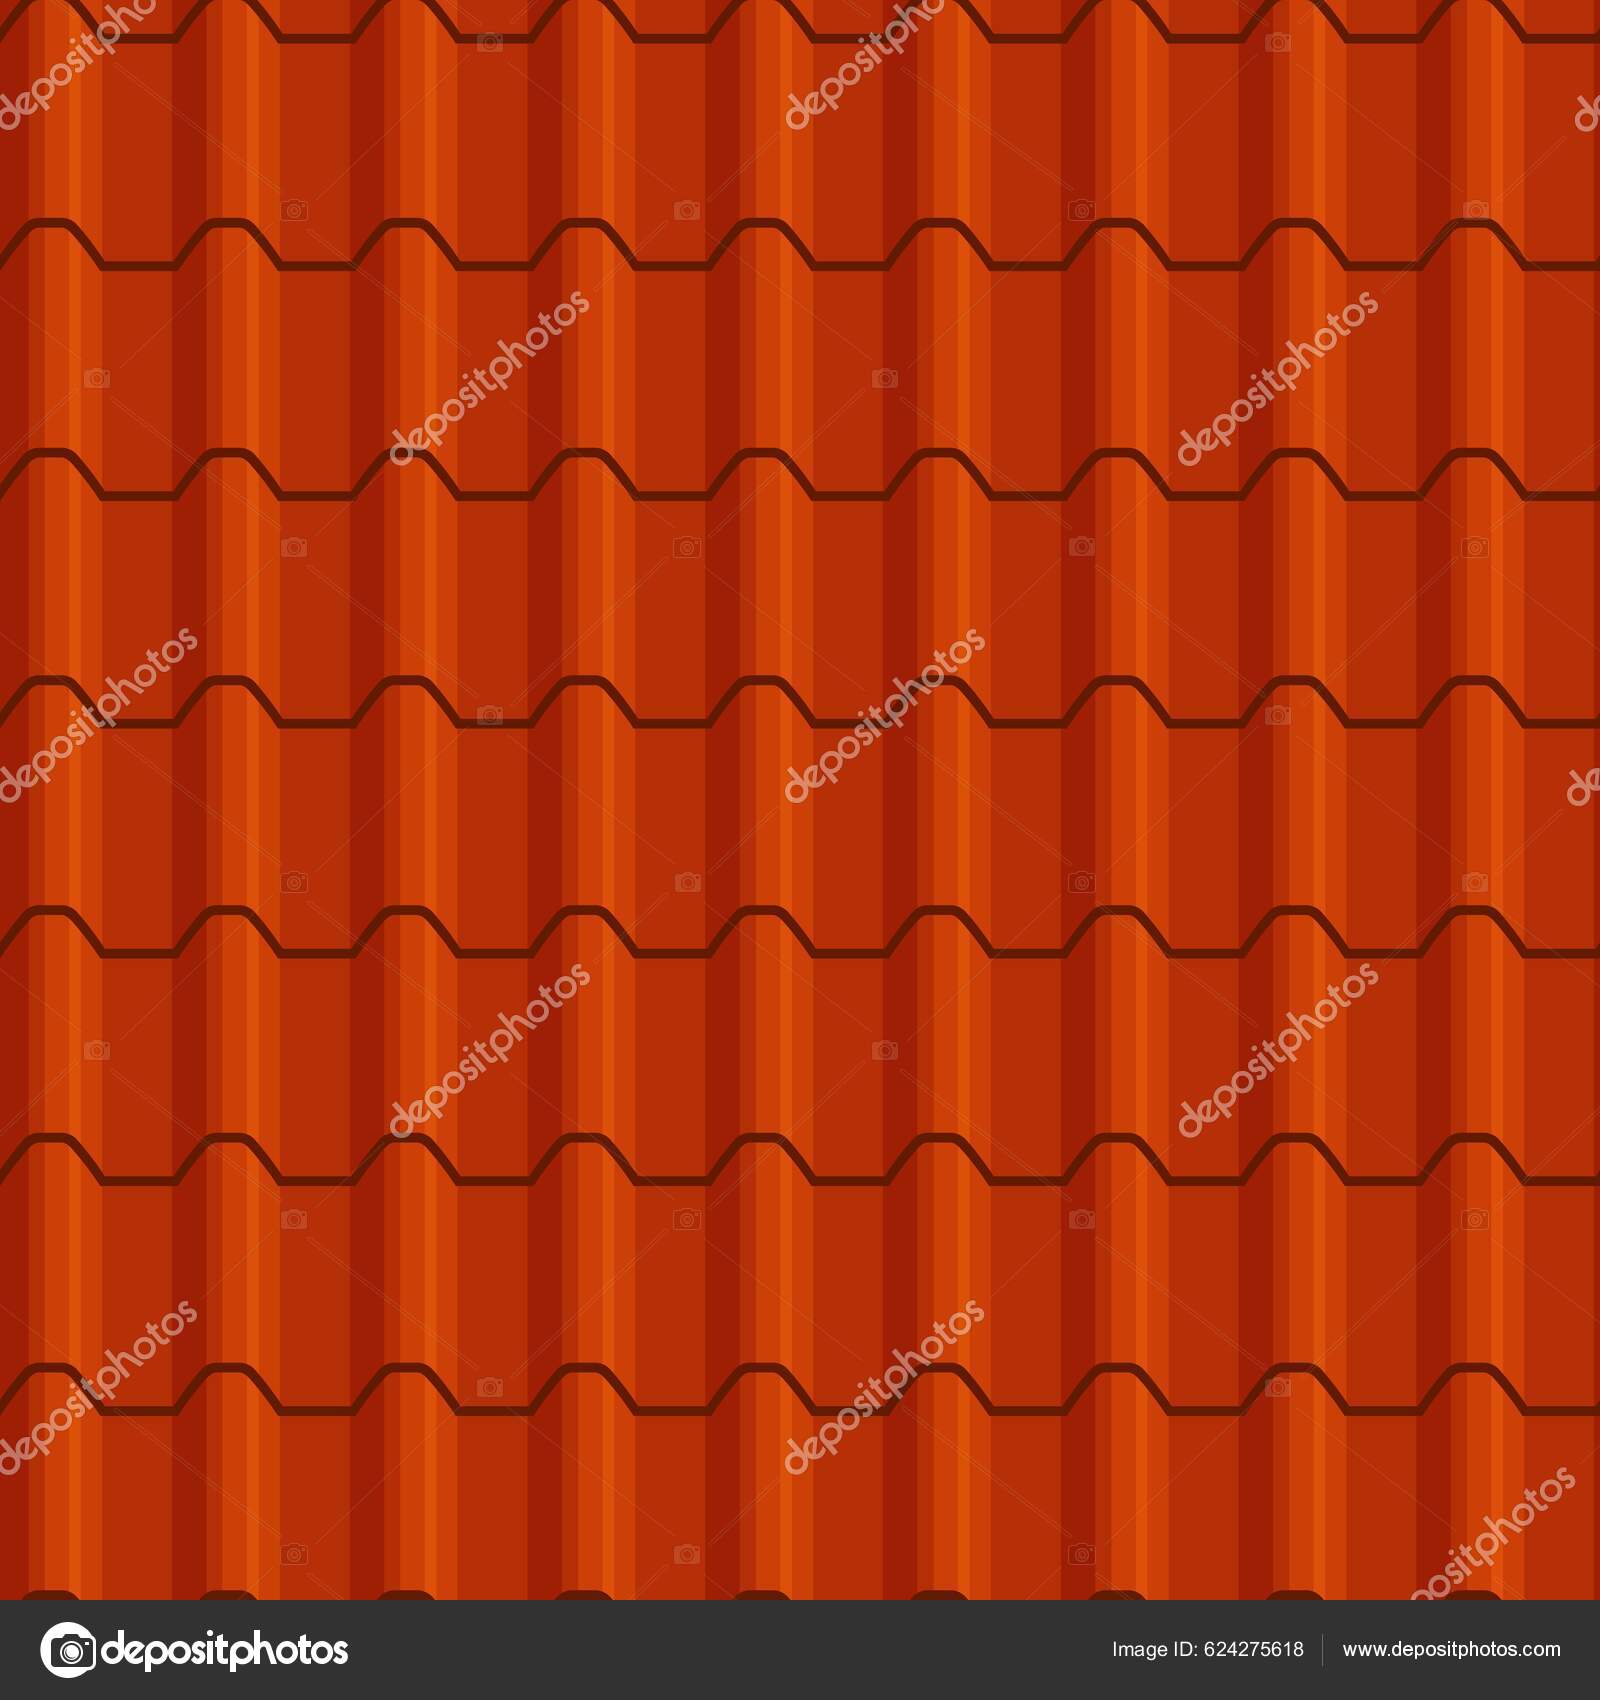 https://st5.depositphotos.com/1020070/62427/v/1600/depositphotos_624275618-stock-illustration-orange-roof-tile-seamless-background.jpg